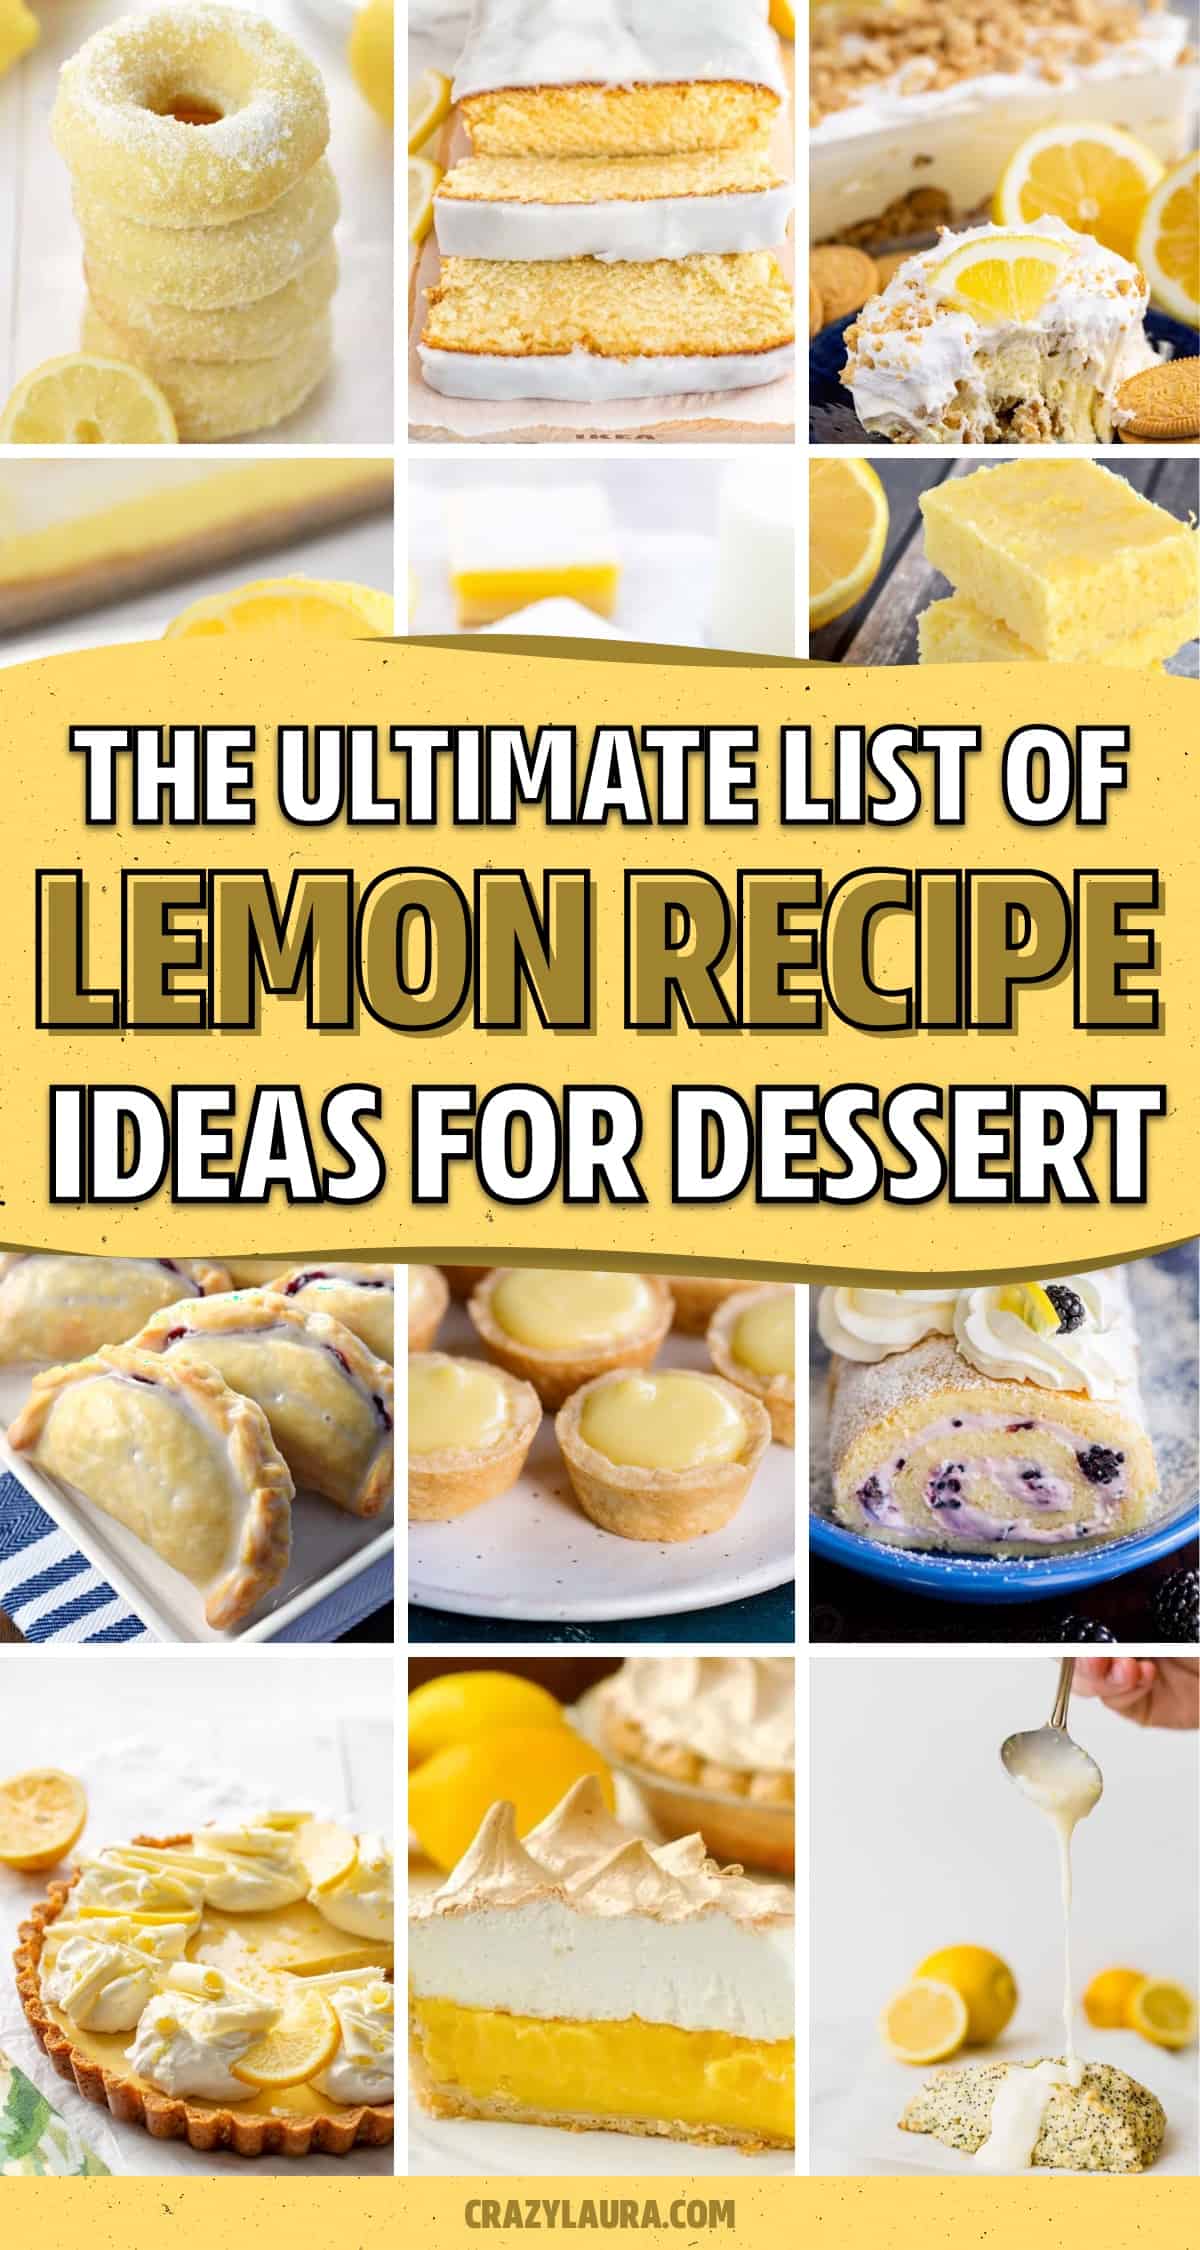 lemon recipe ideas to make for dessert